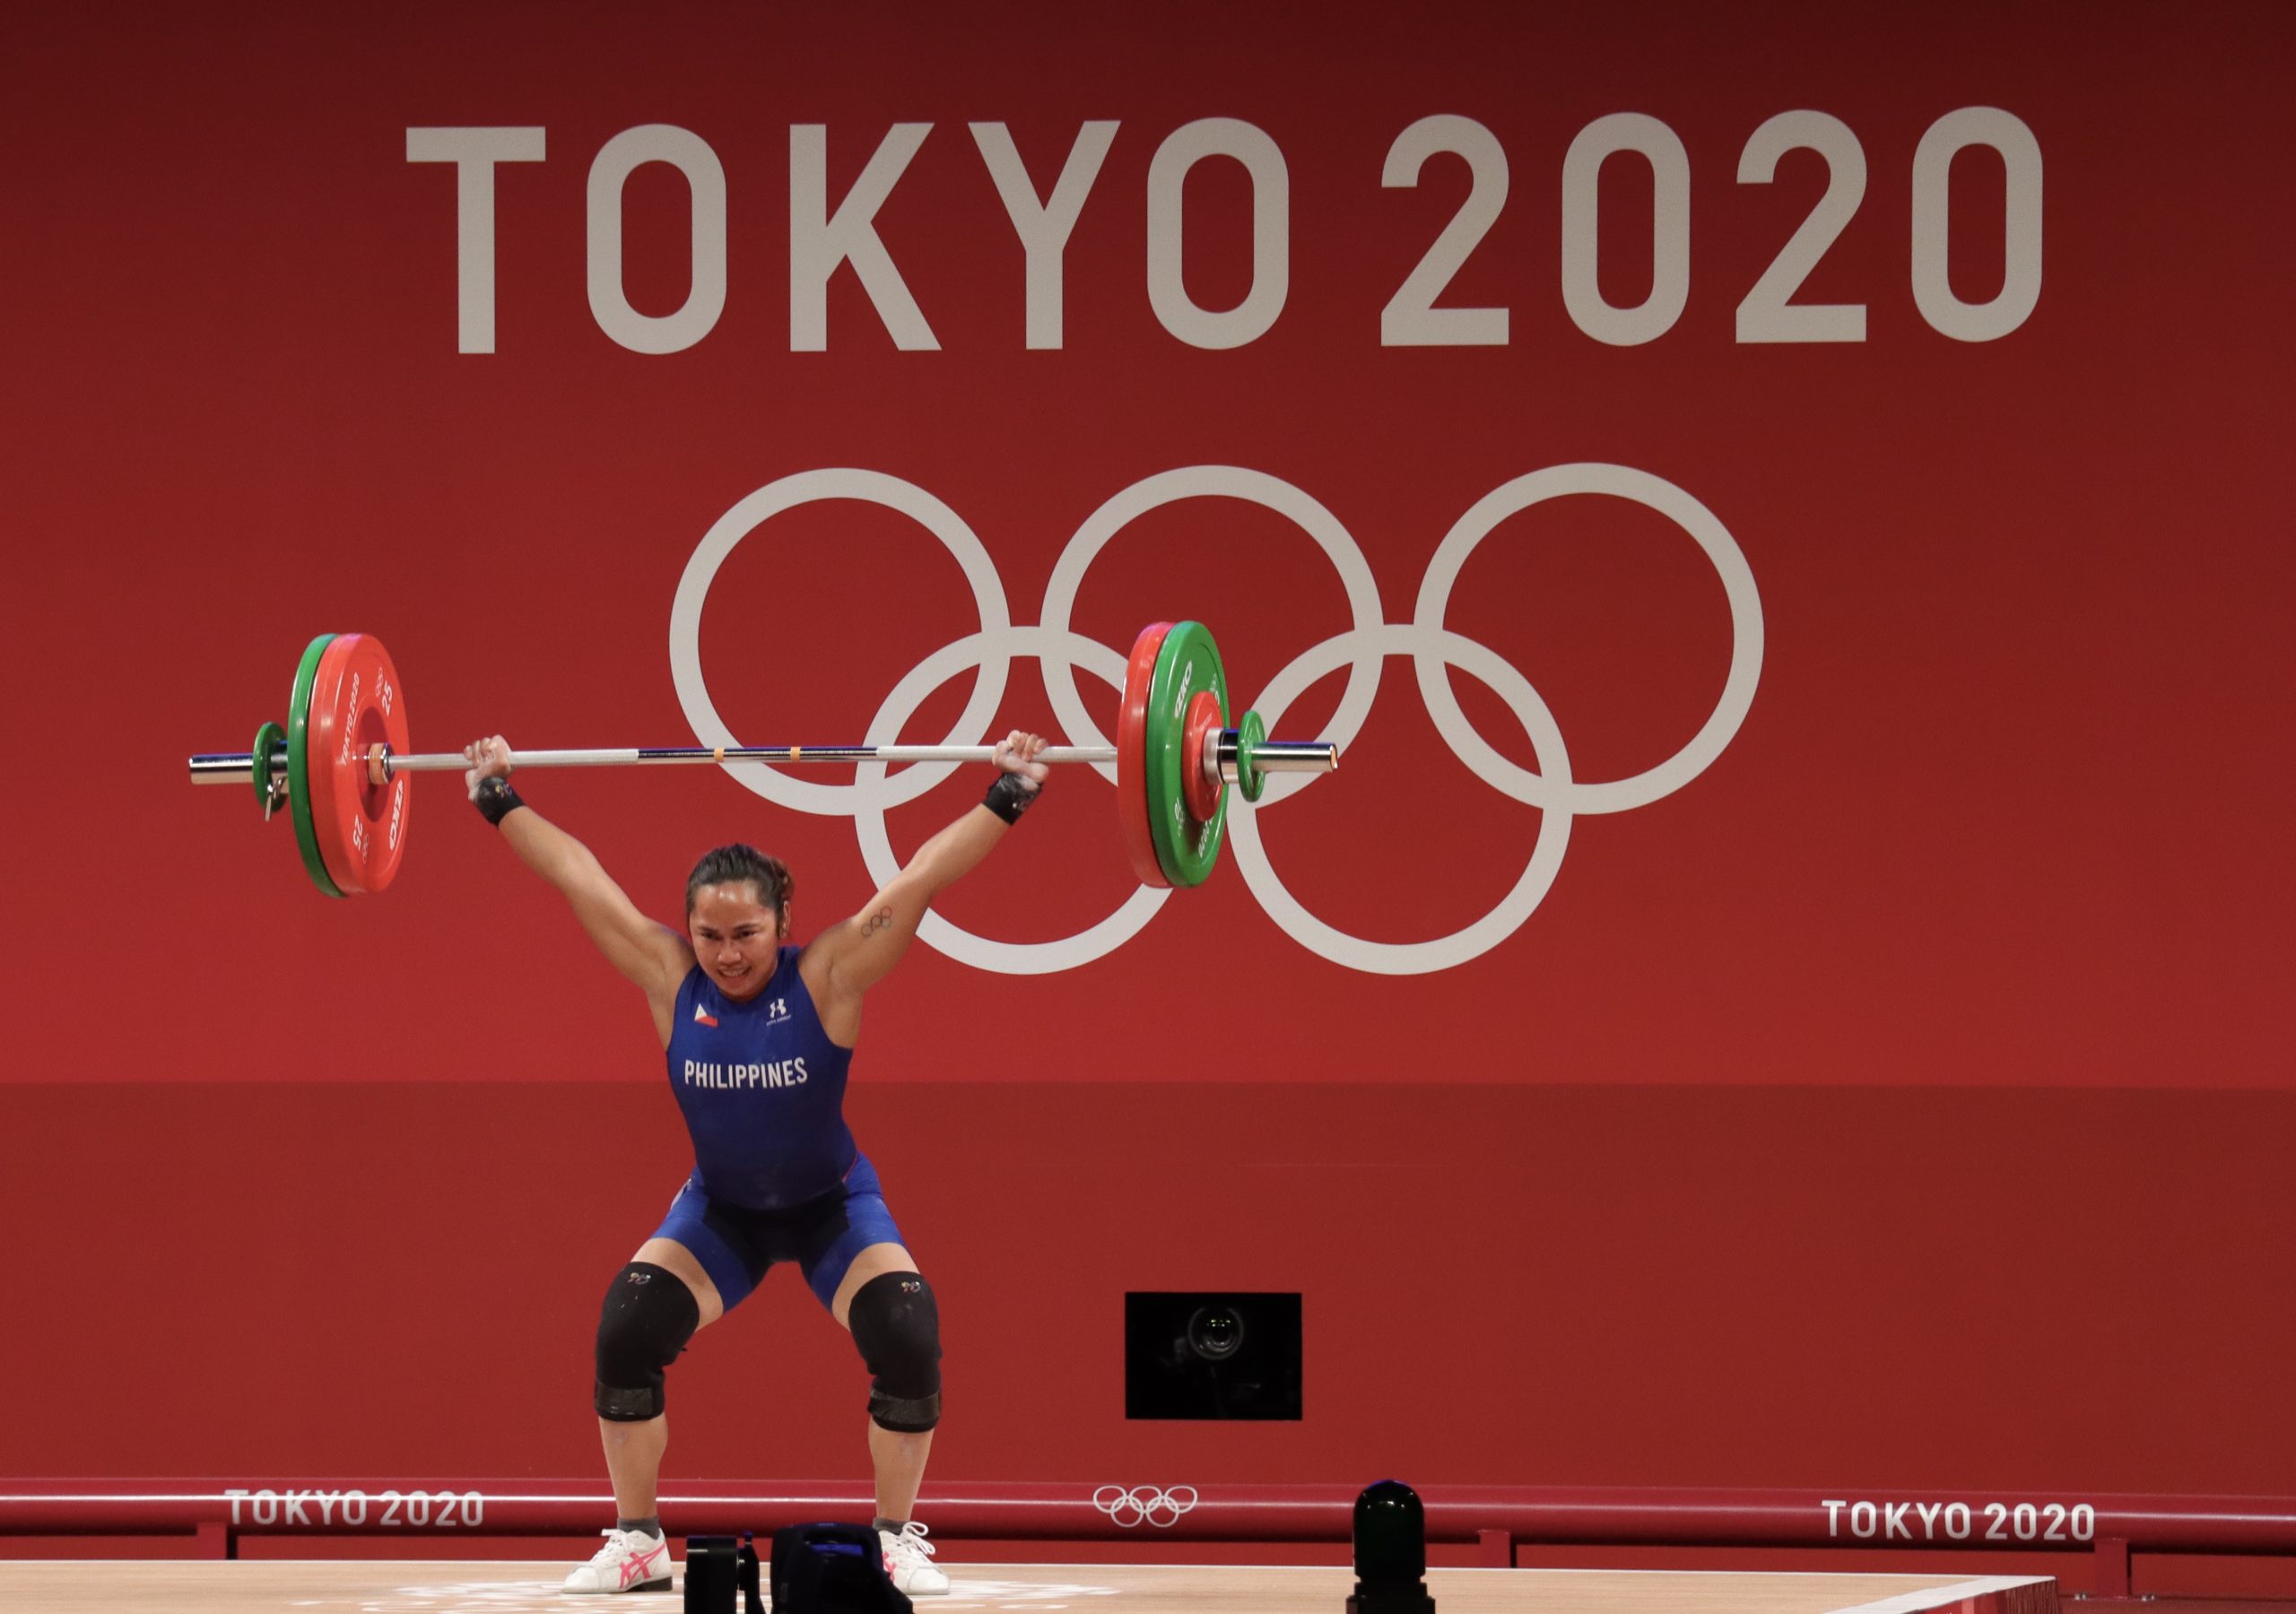 Hidilyn Diaz busca seguir su oro en los Juegos Olímpicos de Tokio con una victoria en los campeonatos mundiales a finales de este año.